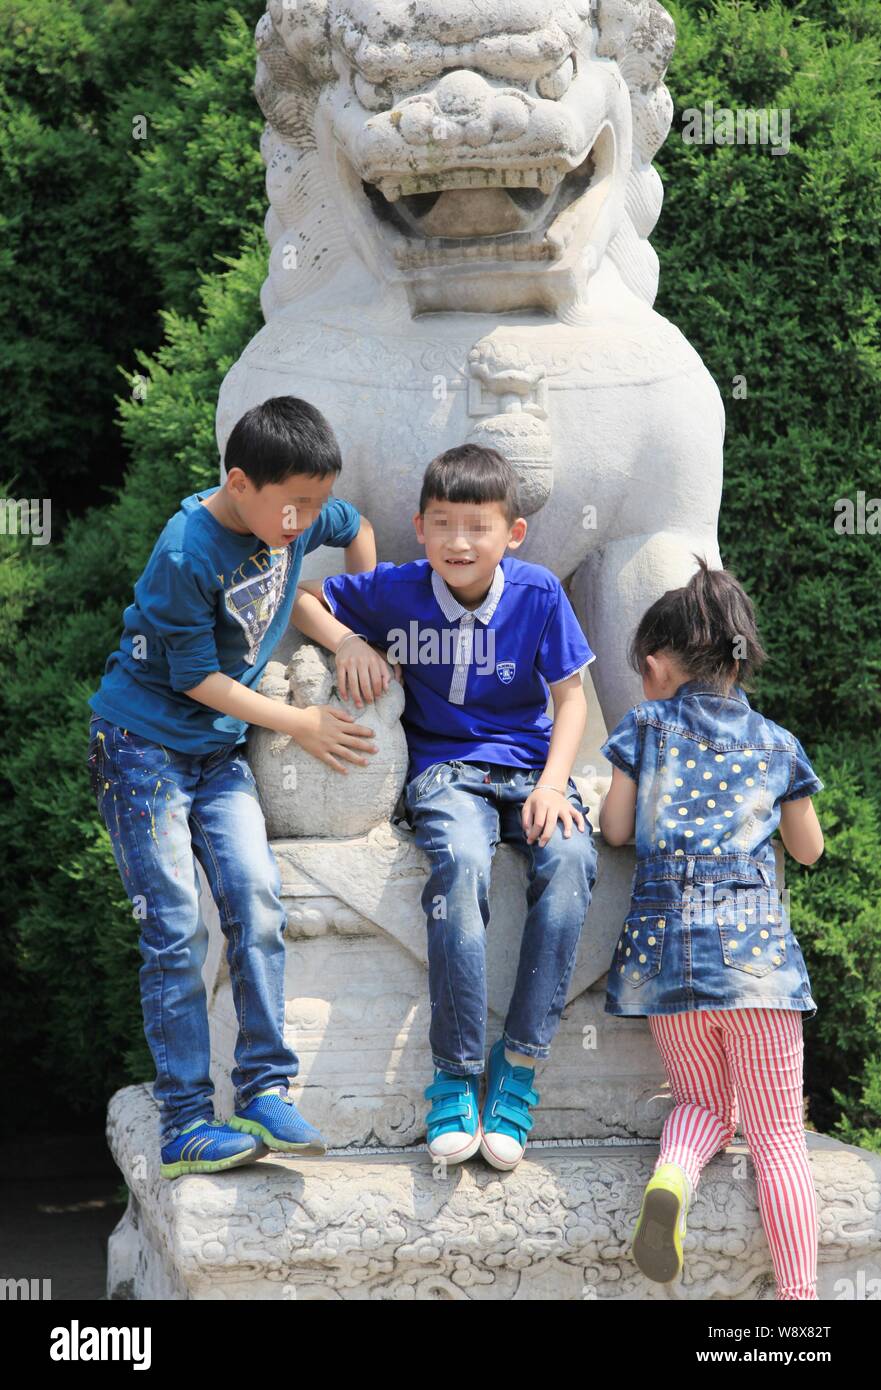 Les enfants chinois escalader un lion en pierre au mausolée de Sun Yat-Sen pendant la journée peut-vacances à Shanghai, Chine de l'est la province de Jiangsu, 1 mai 2014 Banque D'Images